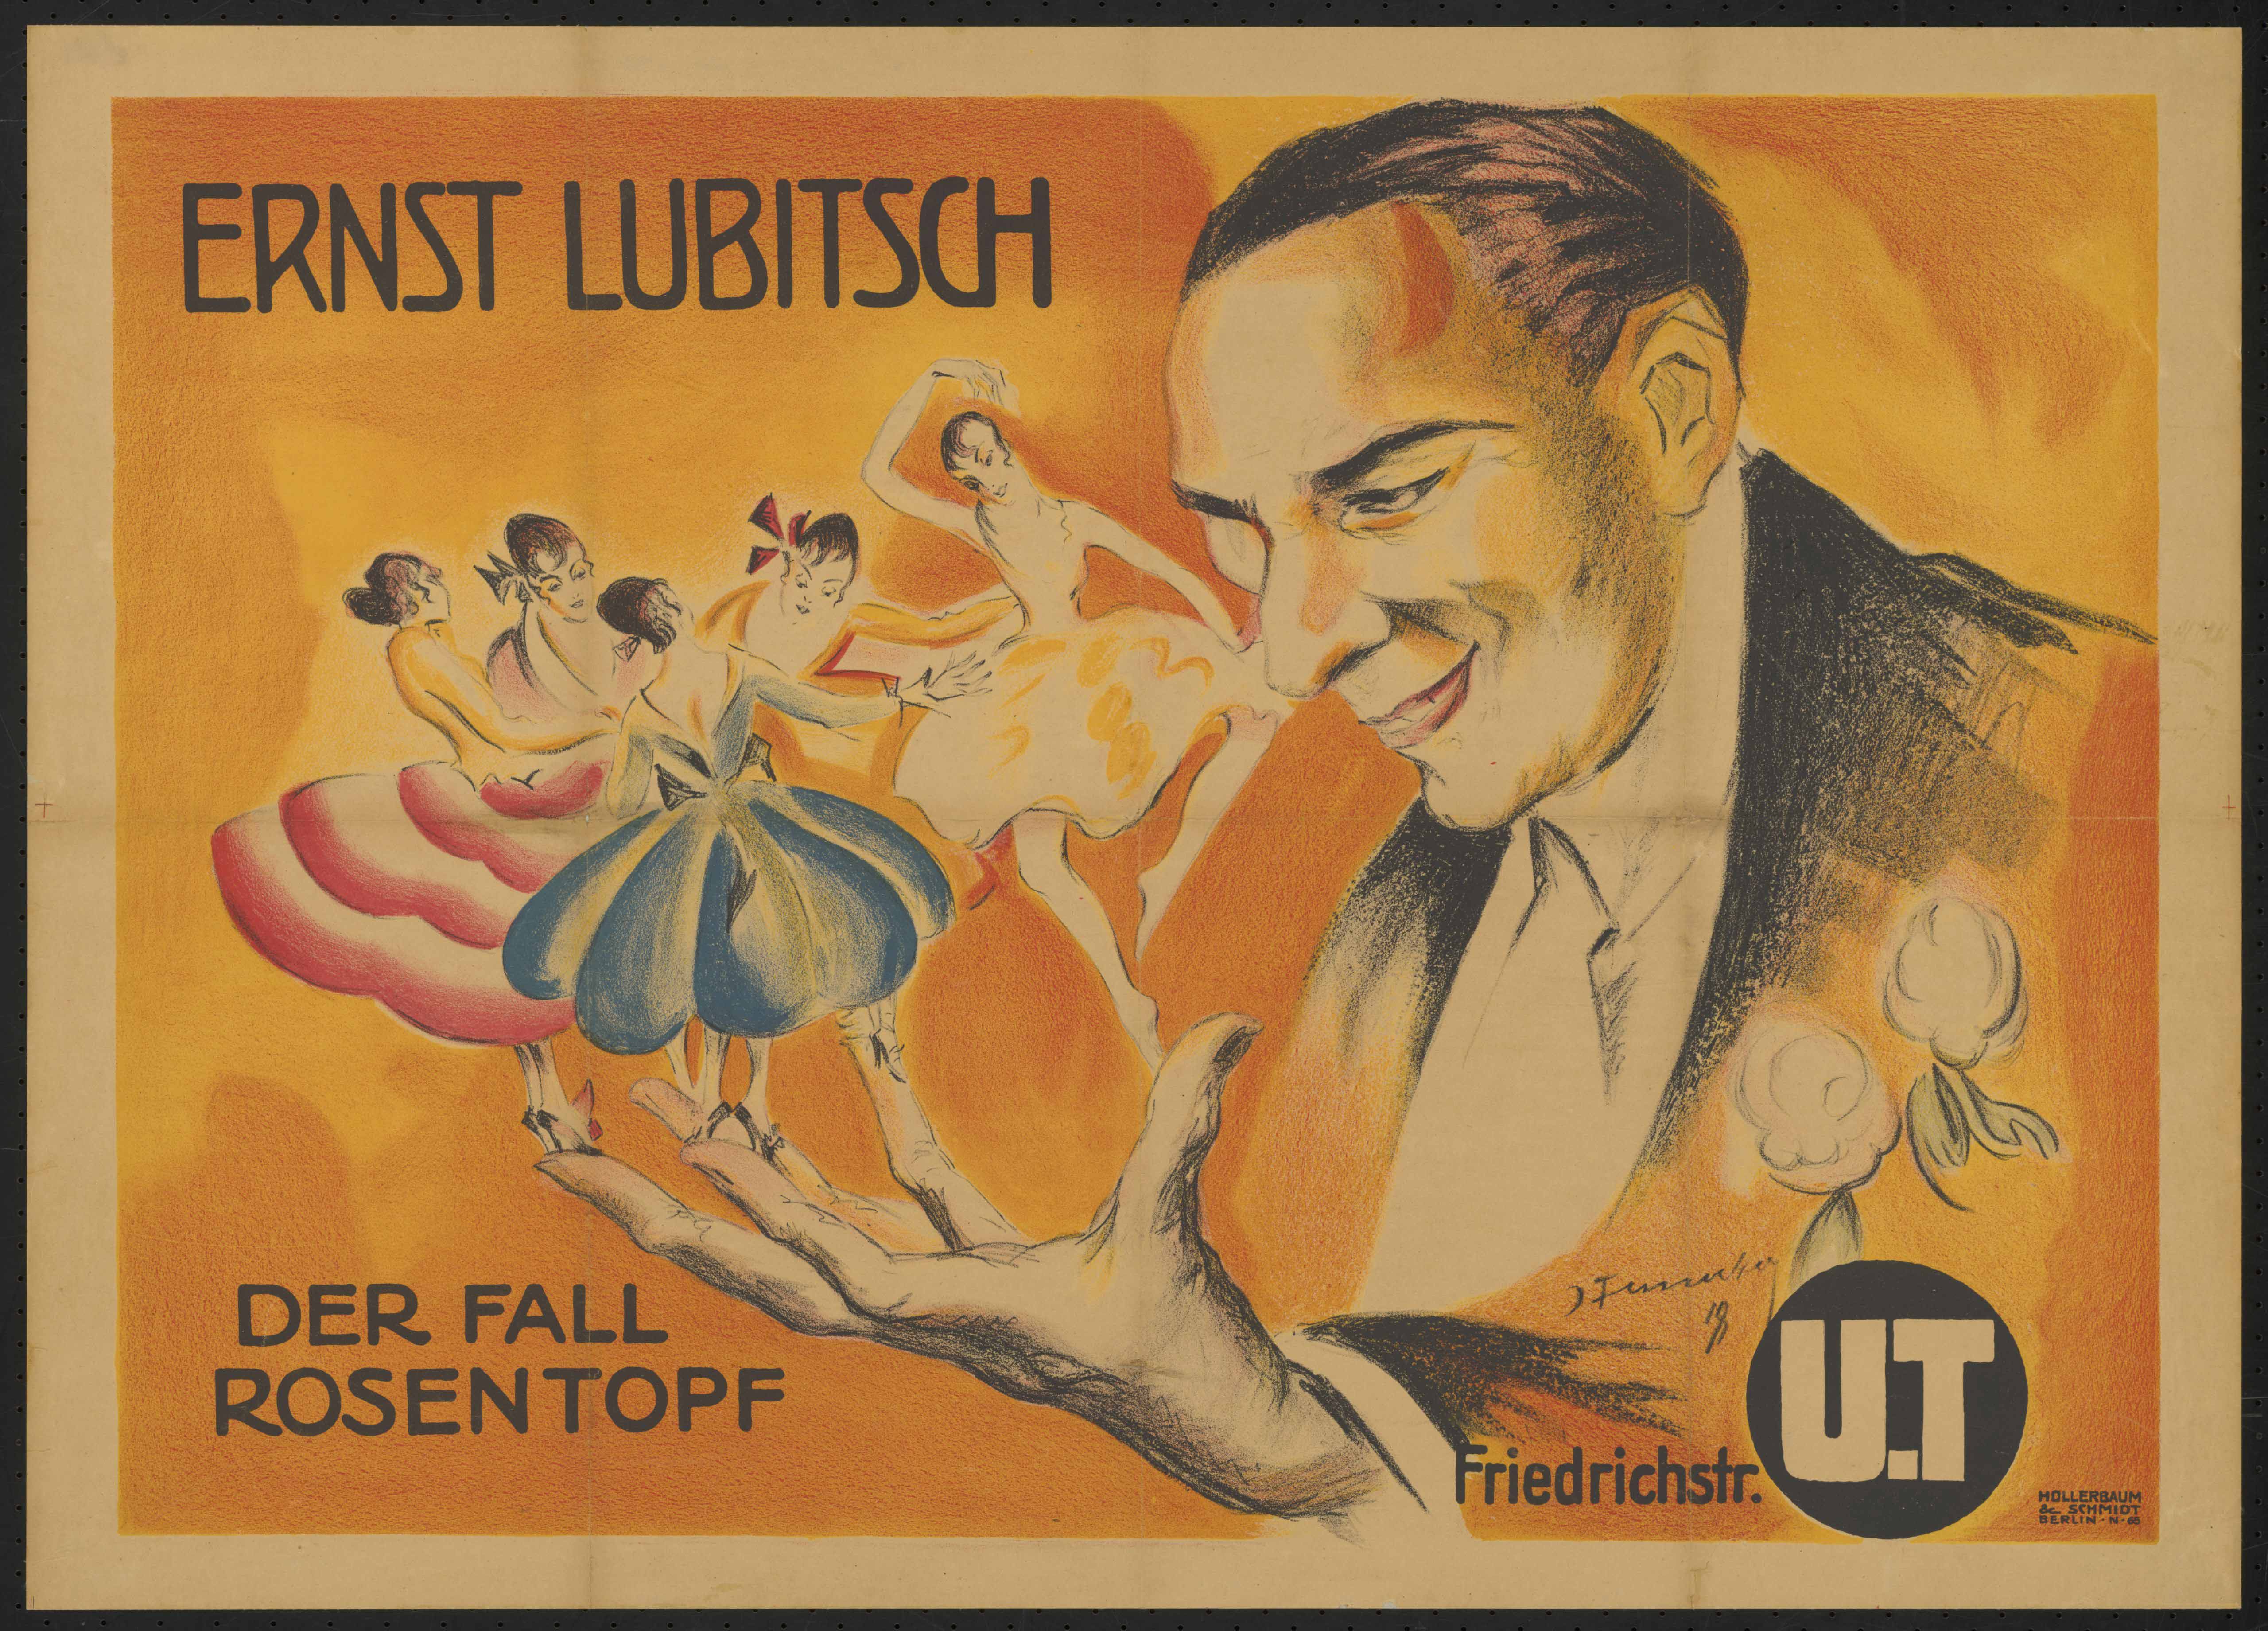 Plakat zu dem Film Der Fall Rosentopf, Deutschland 1919, Regie: Ernst Lubitsch, von Plakatkünstler Josef Fenneker